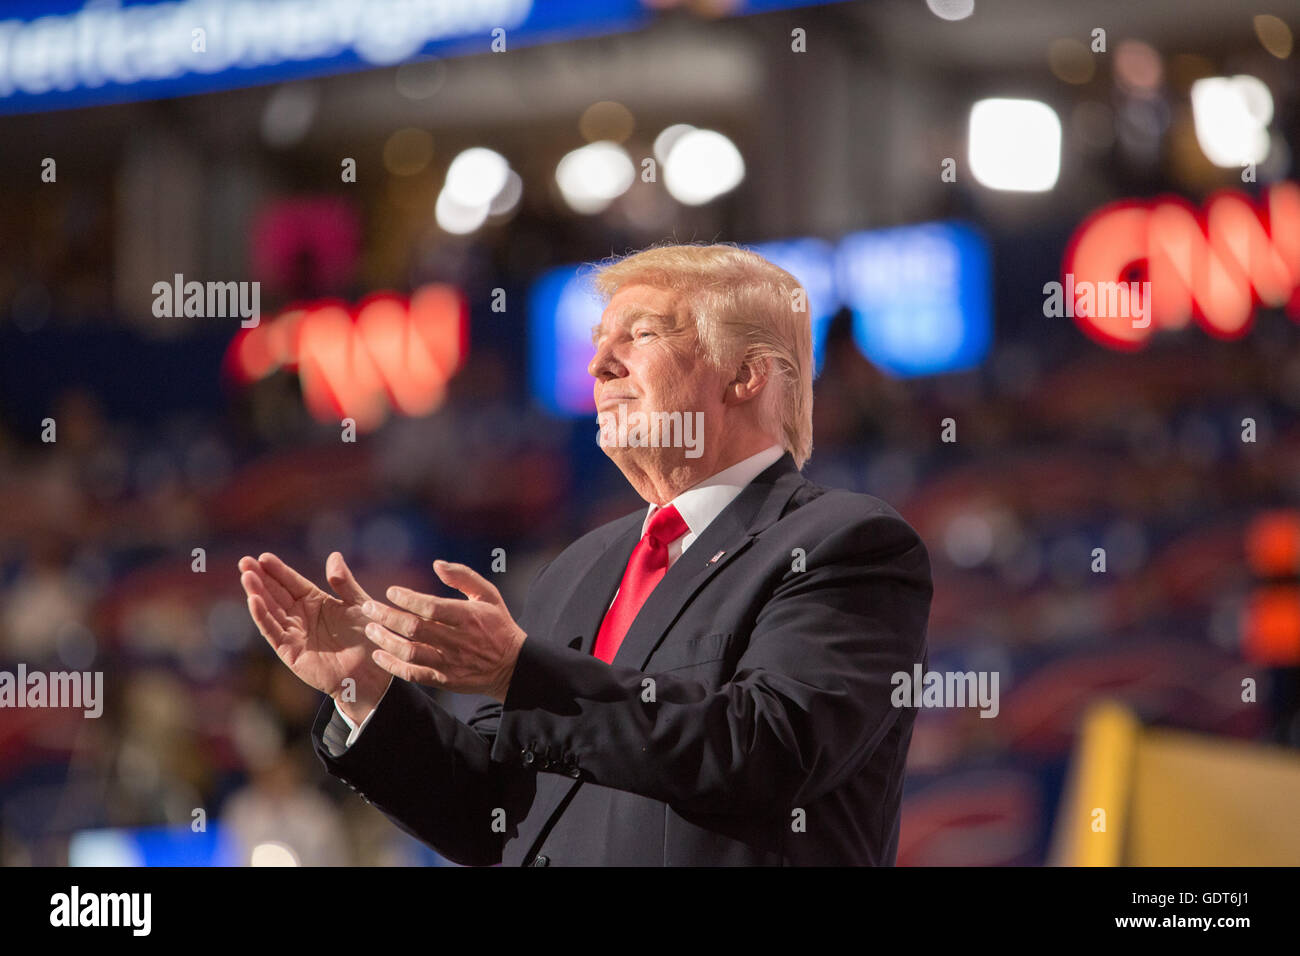 Cleveland, Ohio, USA; Luglio 21, 2016: Trump accetta la sua candidatura per funzionare per il presidente alla Convention Nazionale Repubblicana. (Philip Scalia/Alamy Live News) Foto Stock